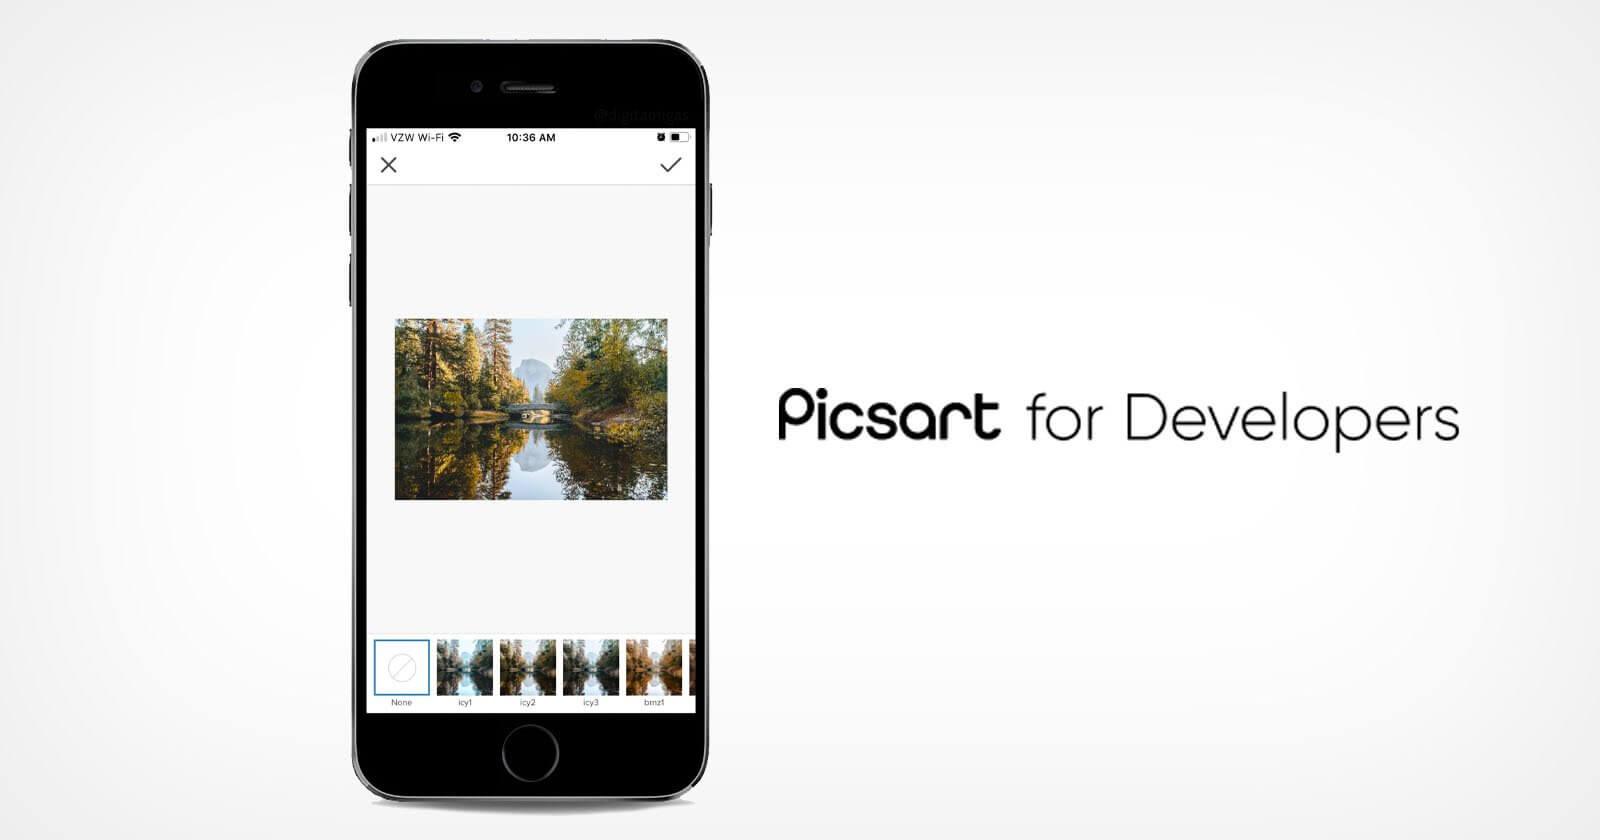 Picsart for Developers sẽ ra mắt với tám đối tác trong lĩnh vực quảng cáo kỹ thuật số